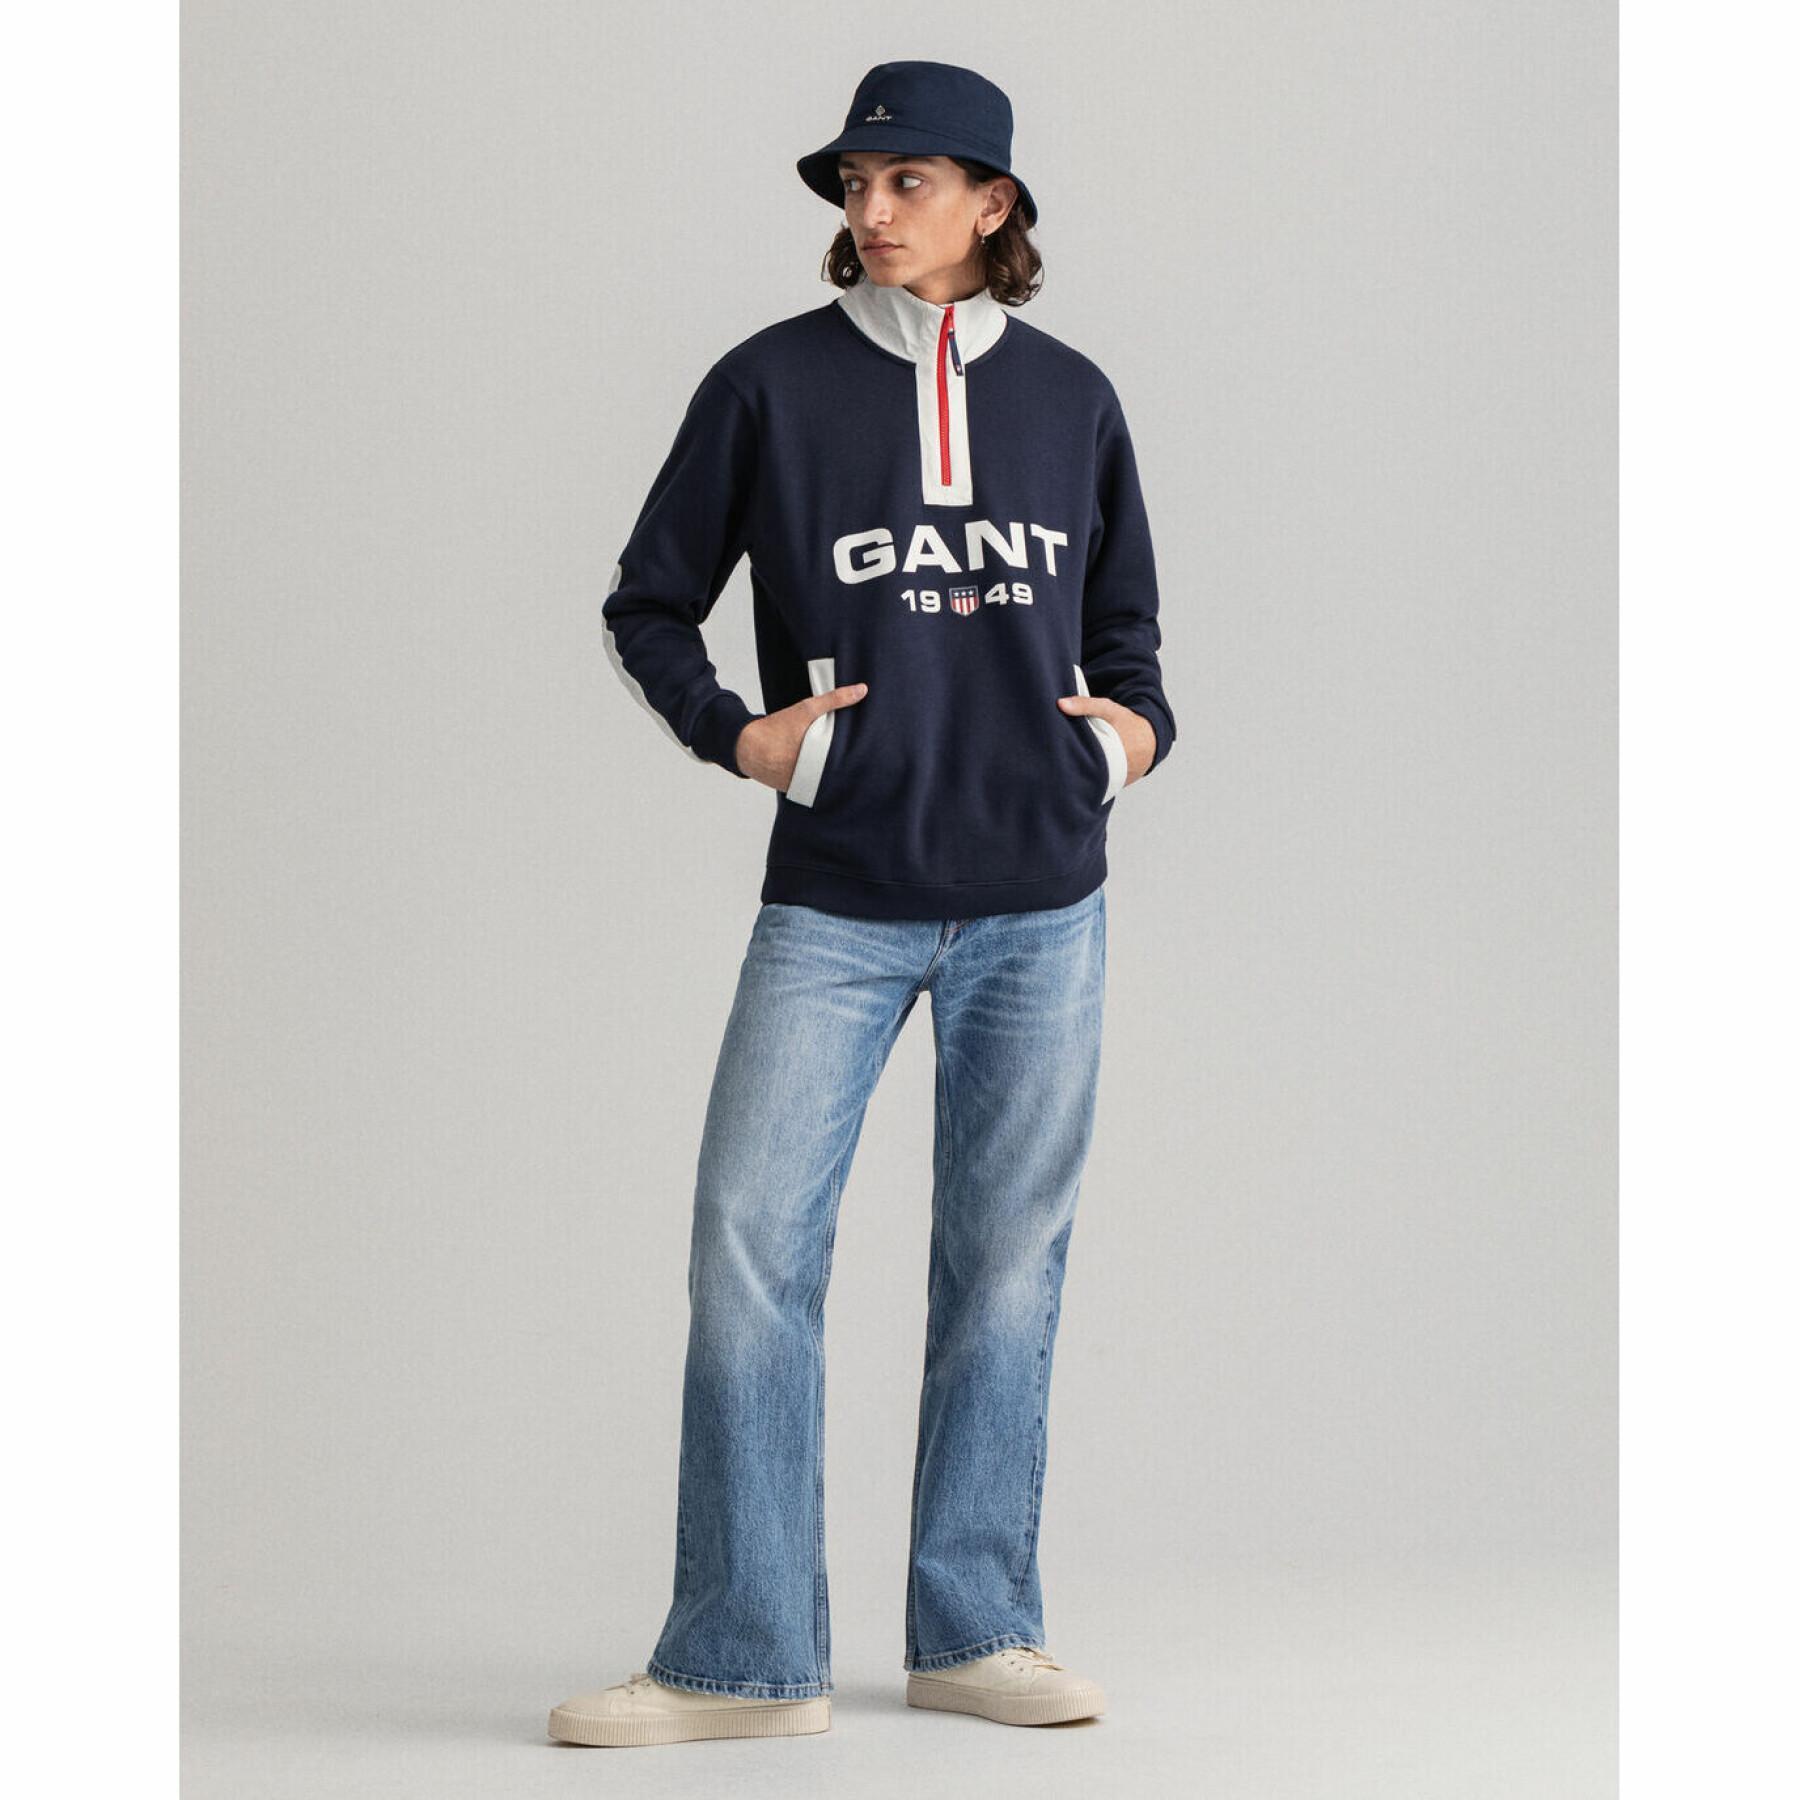 Sweatshirt Gant Retro Half-Zip